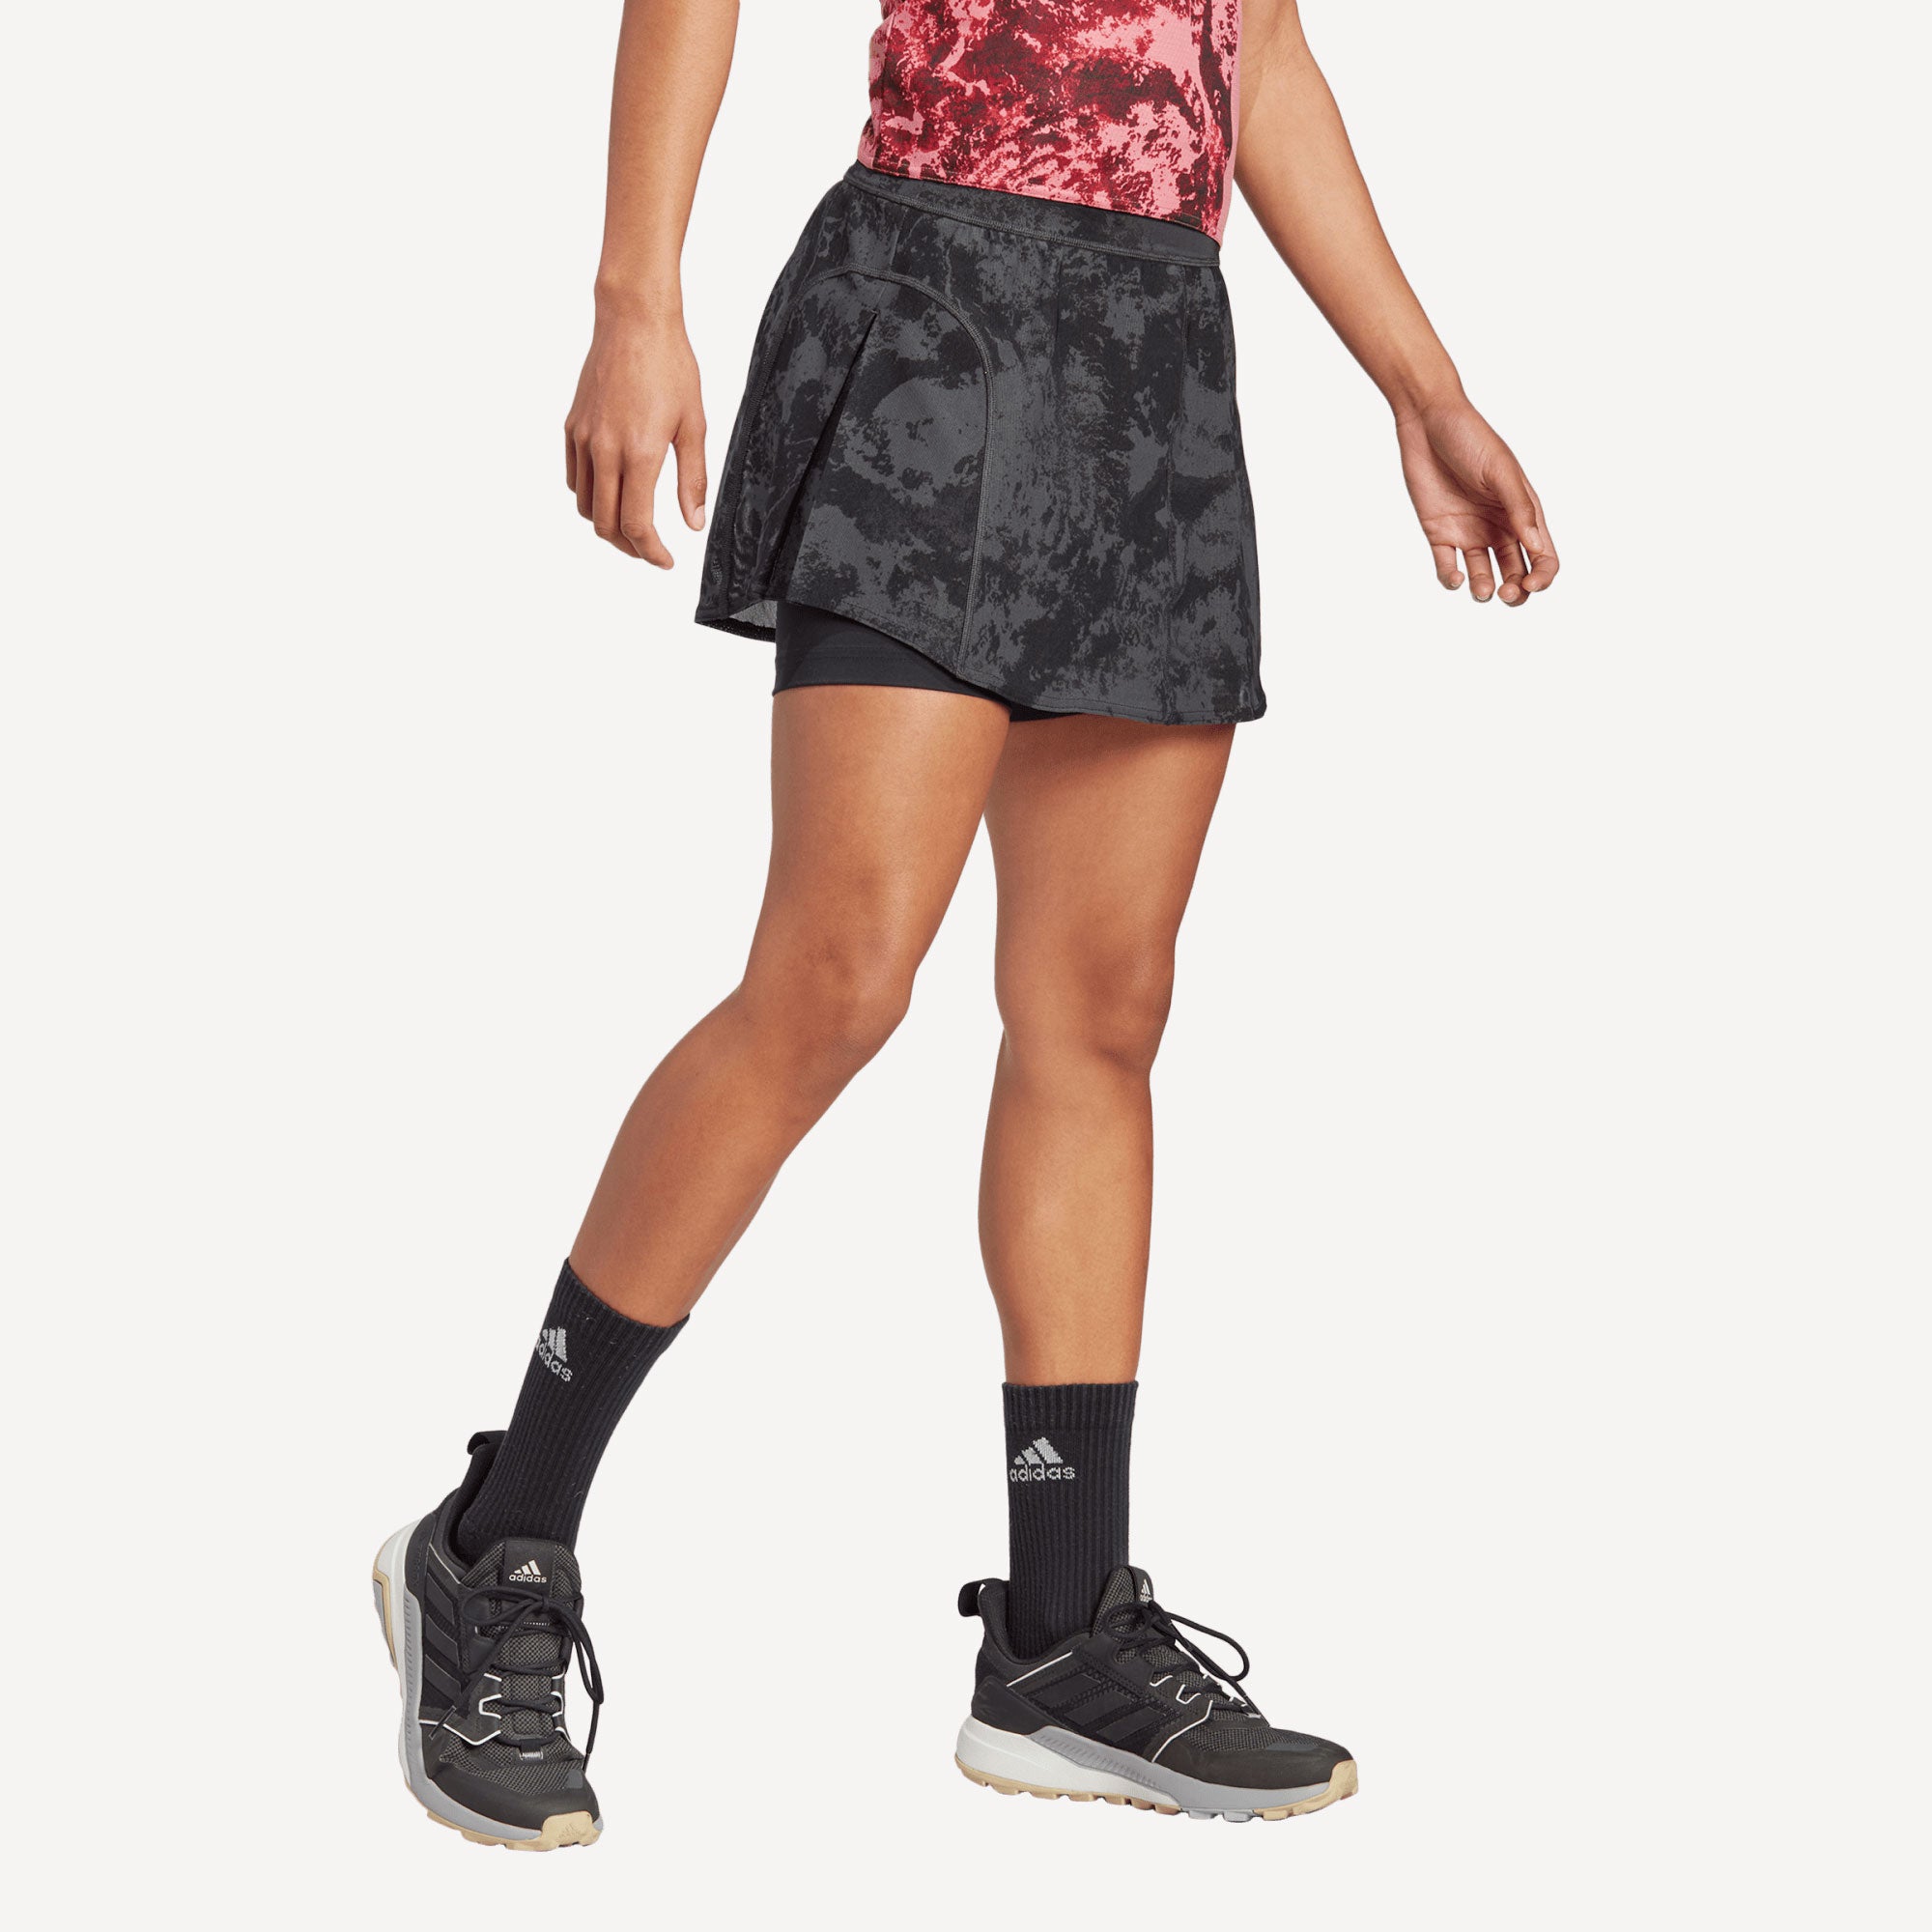 adidas Paris Match Women's Tennis Skirt Grey (3)